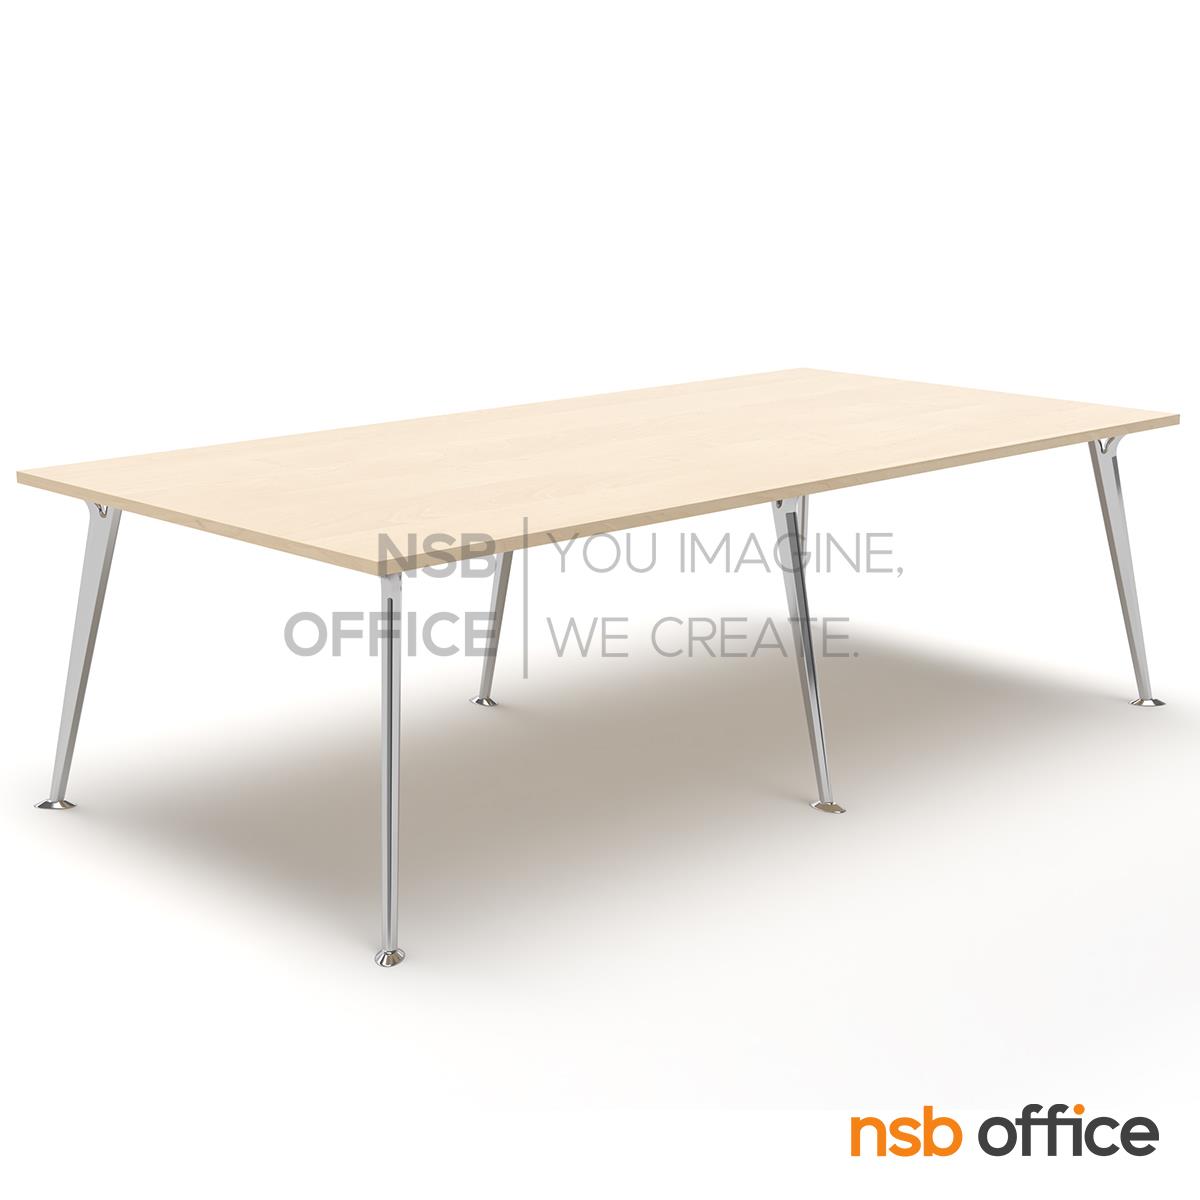 A05A231:โต๊ะประชุมทรงสี่เหลี่ยม  รุ่น Bronze (บรอนซ์) ขนาด 240W*120D cm. ขาอลูมิเนียม